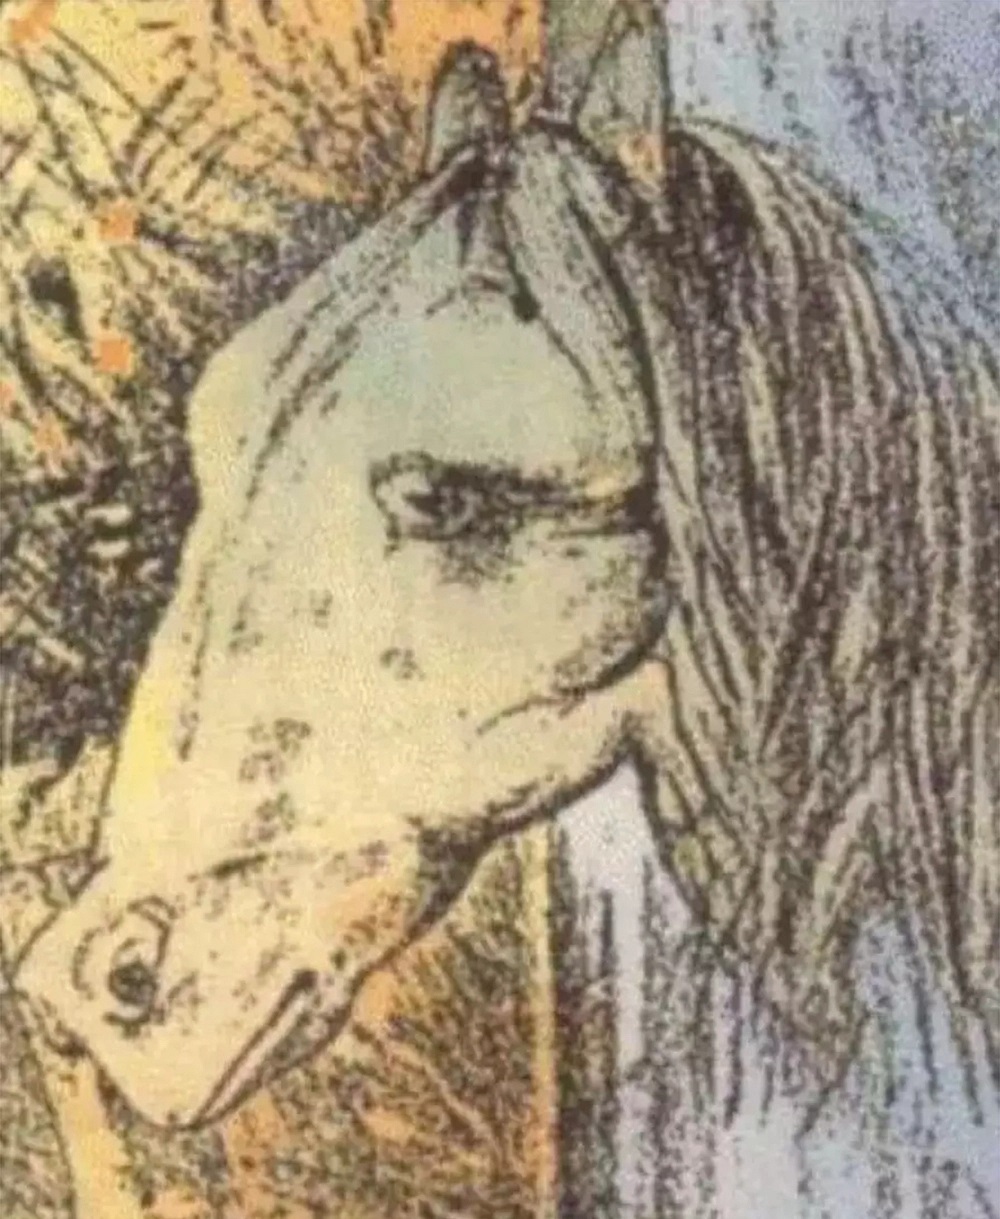 تست شخصیت : شمار در تصویر چه می بینید؟ اسب یا قورباغه؟